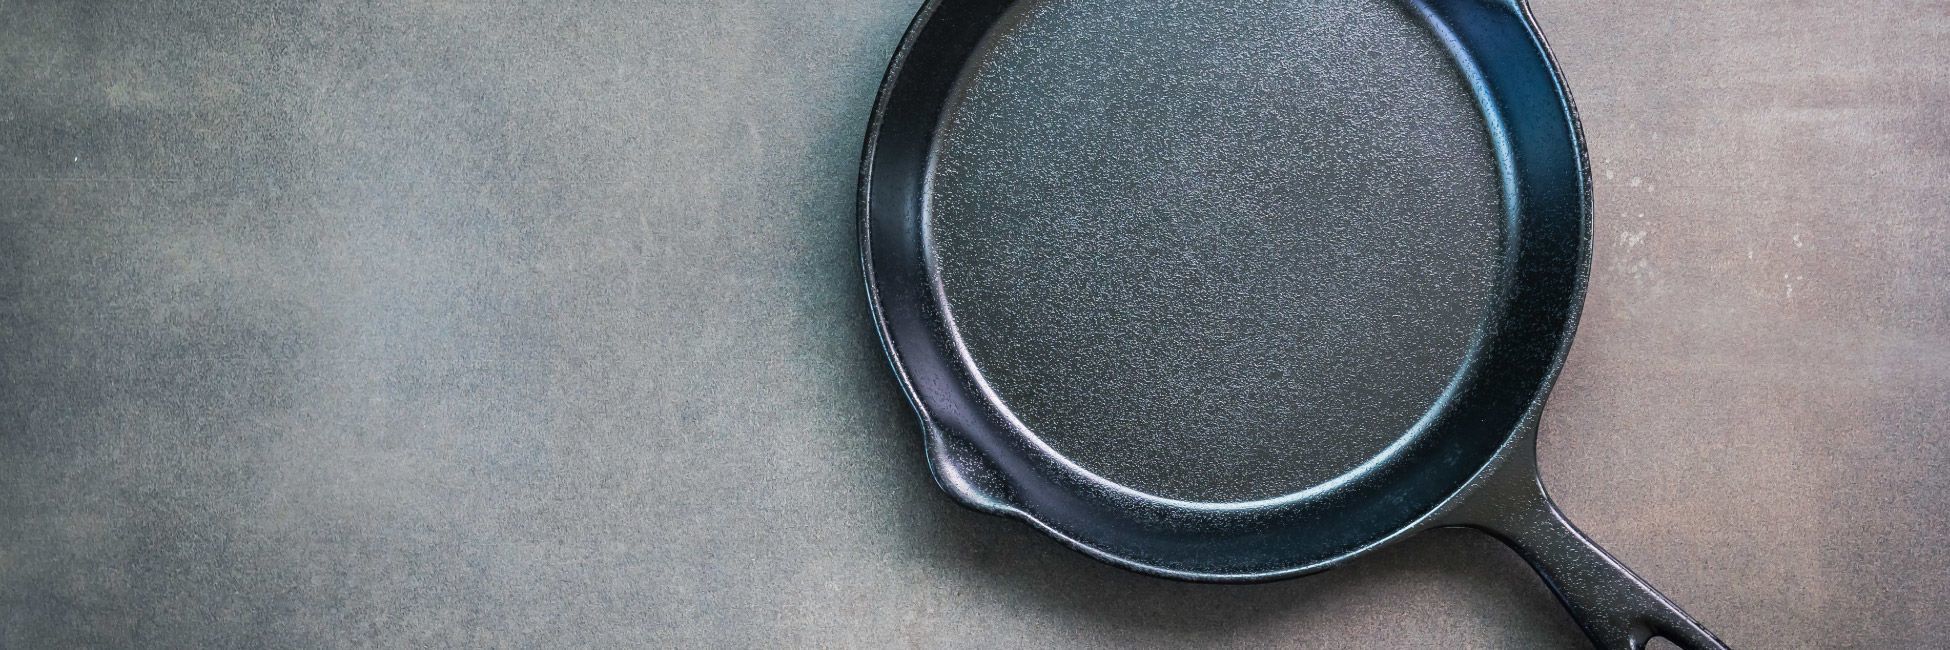 Посуда из чугуна — классика на вашей кухне